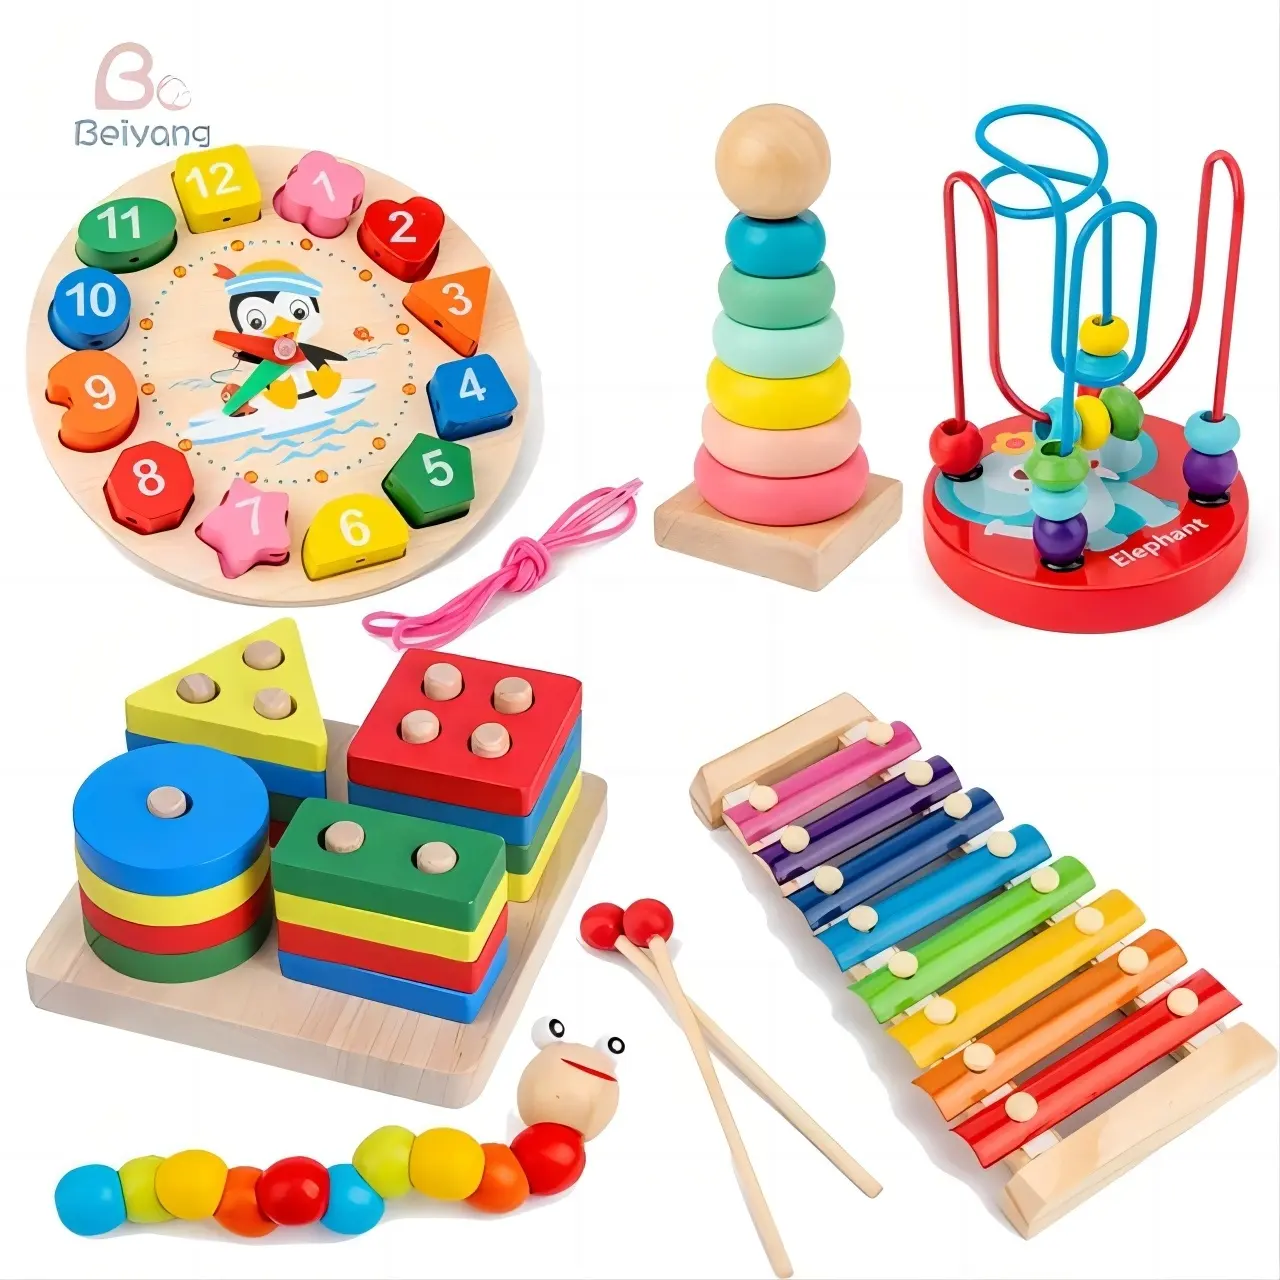 Montessori ahşap bebek oyuncak seti | Erkek ve kız için gelişim oyunları ve bulmacalar | Eğitim öğretici oyuncaklar (5-6 adet)